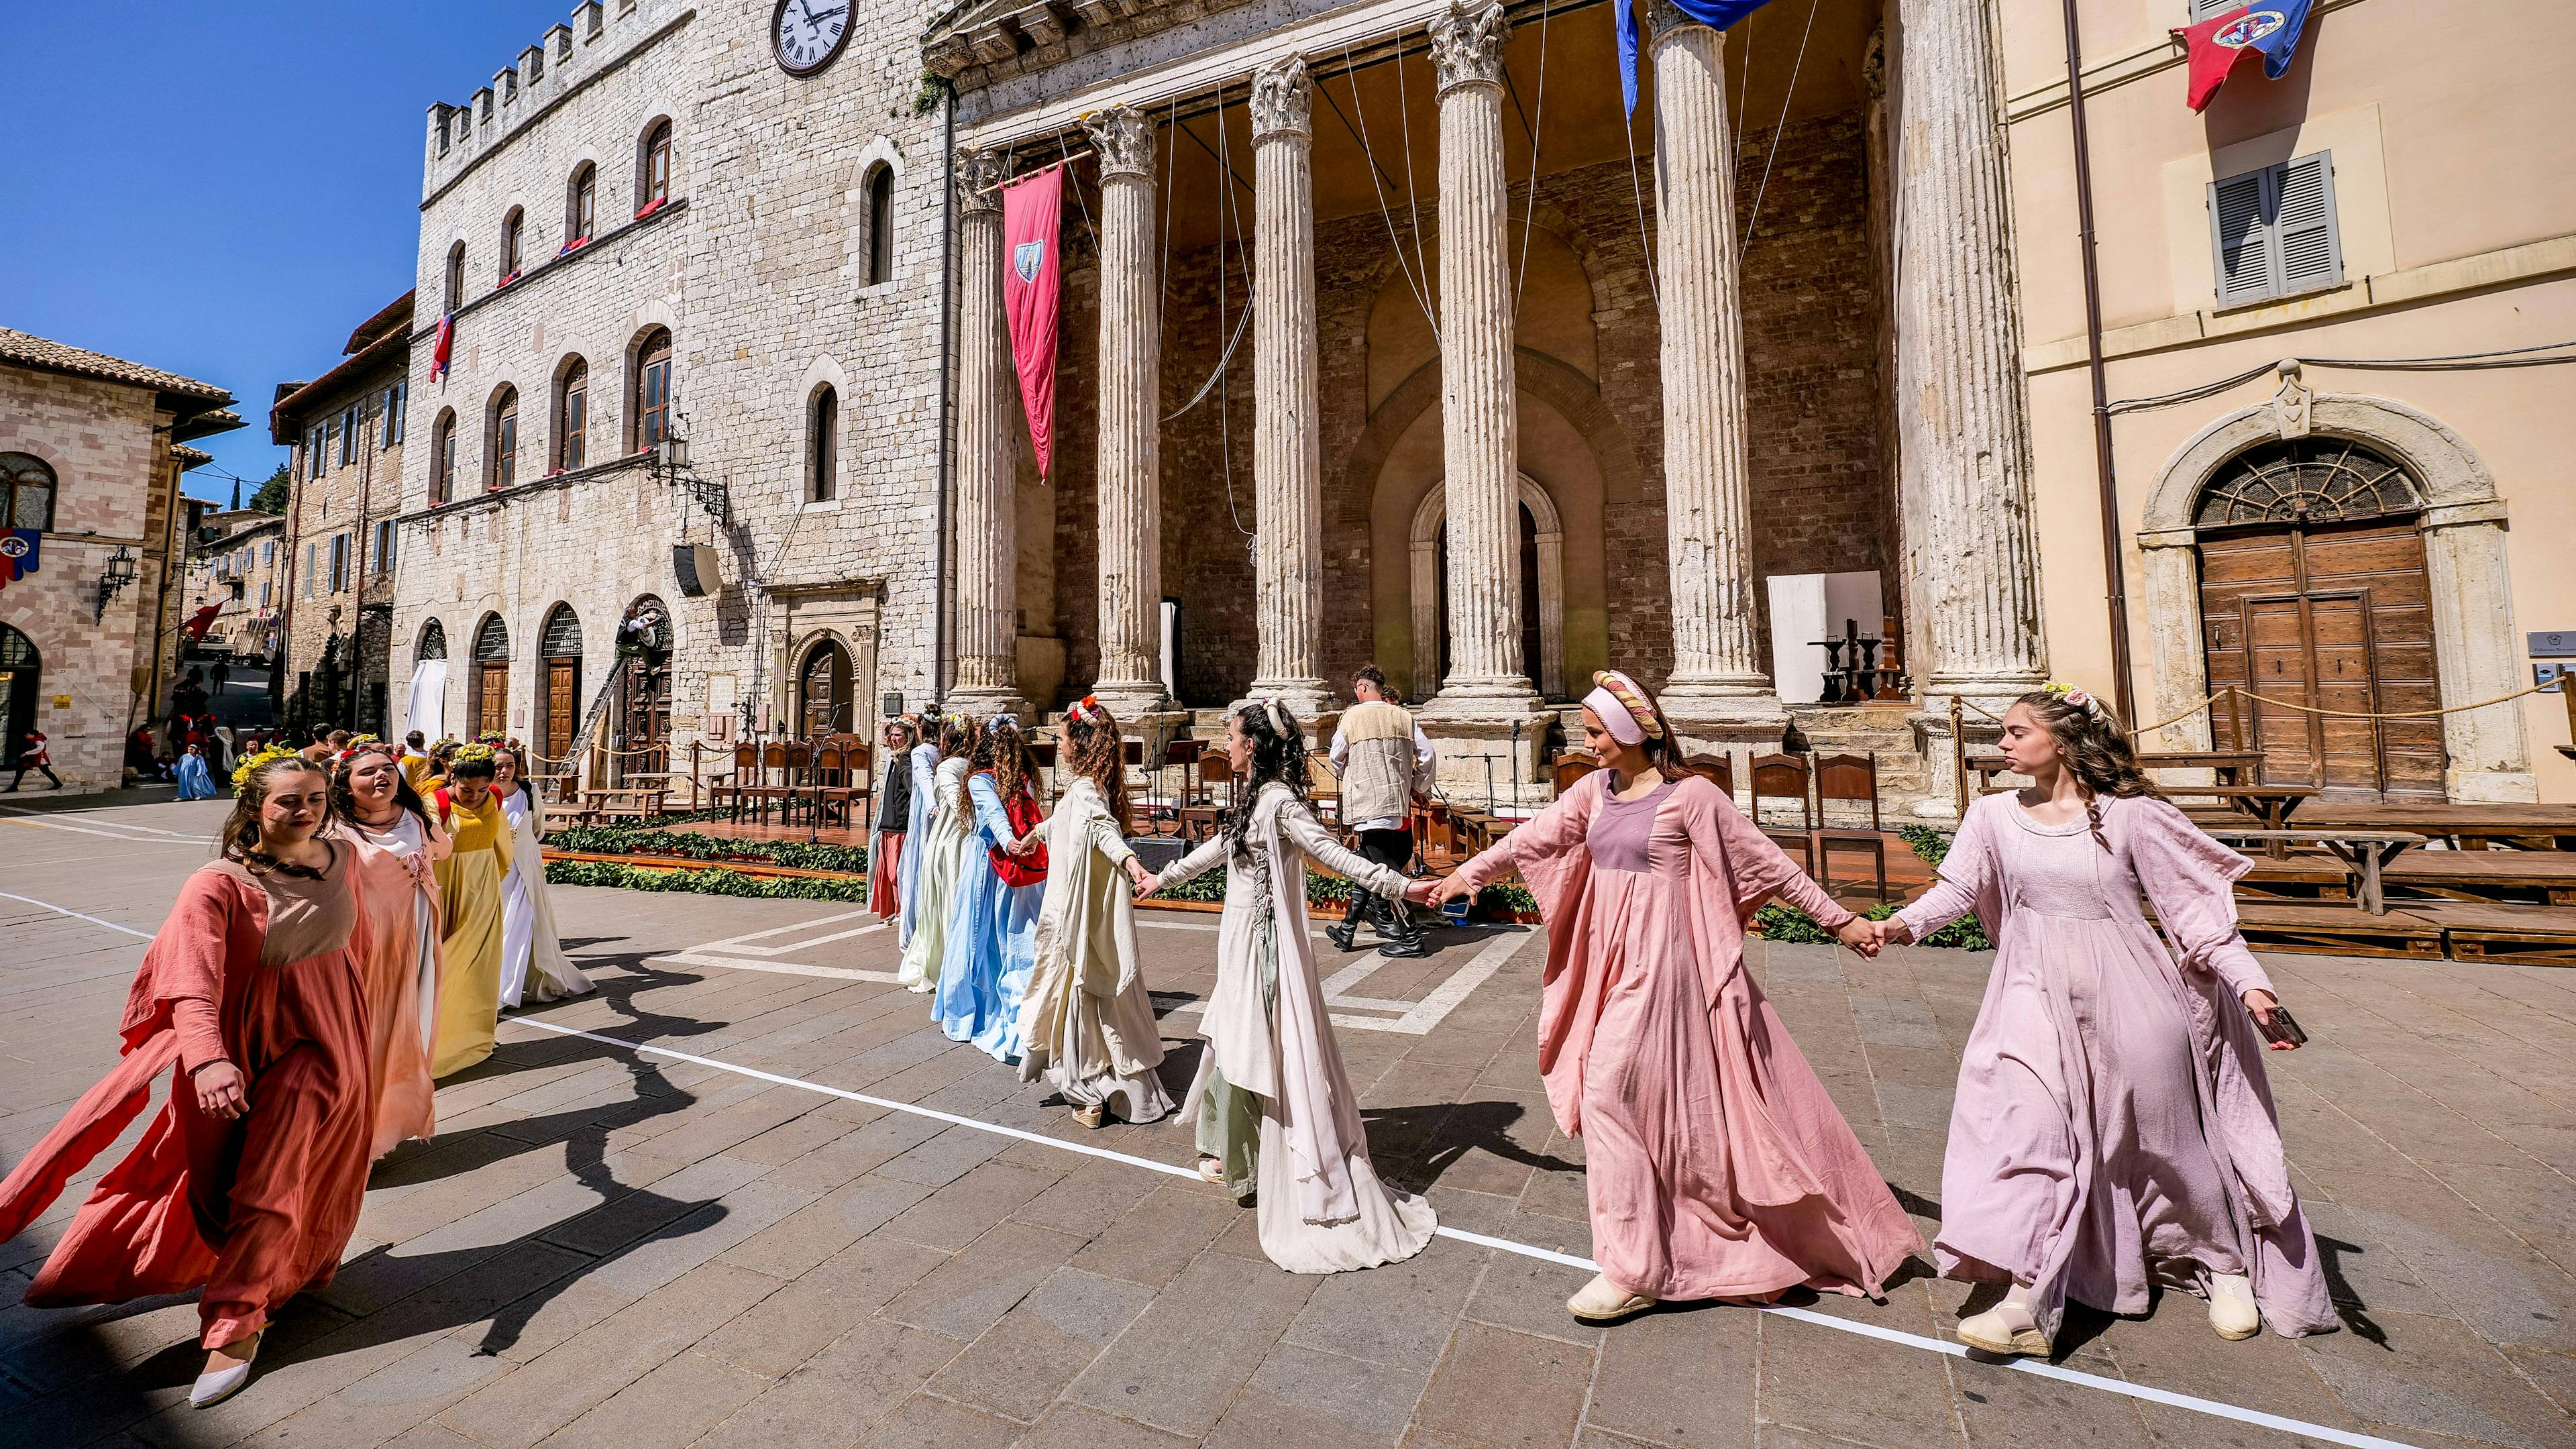 Ragazze danzano durante il Calendimaggio ad Assisi